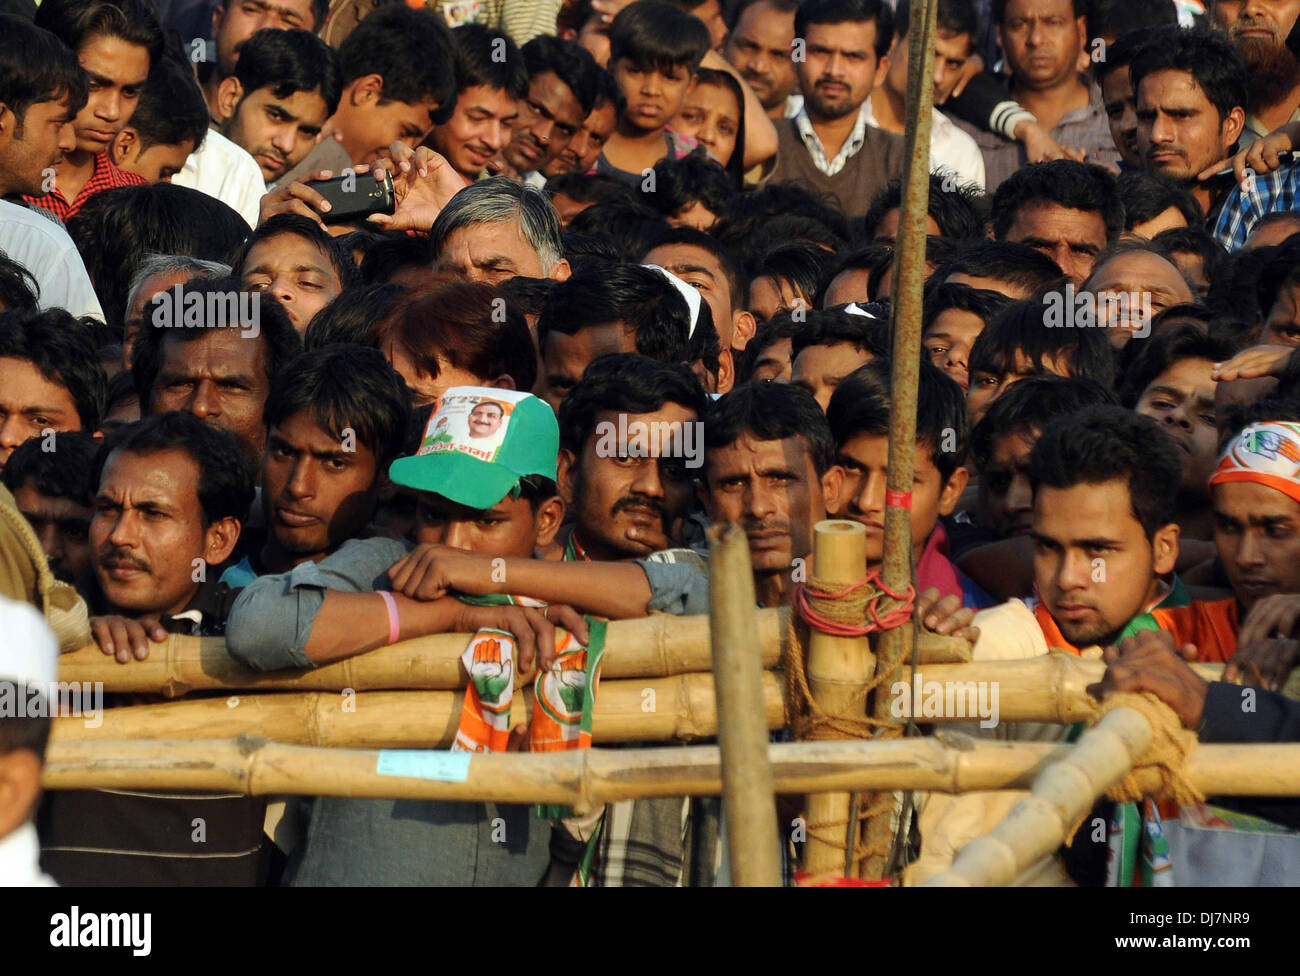 New Delhi, India, 24 Nov 2013. I sostenitori del partito del Congresso Nazionale Indiano ascoltare il presidente del Partito Sonia Gandhi rivolgendosi a un pubblico rally davanti a Delhi alle elezioni statali a Shastri Park. Foto Stock